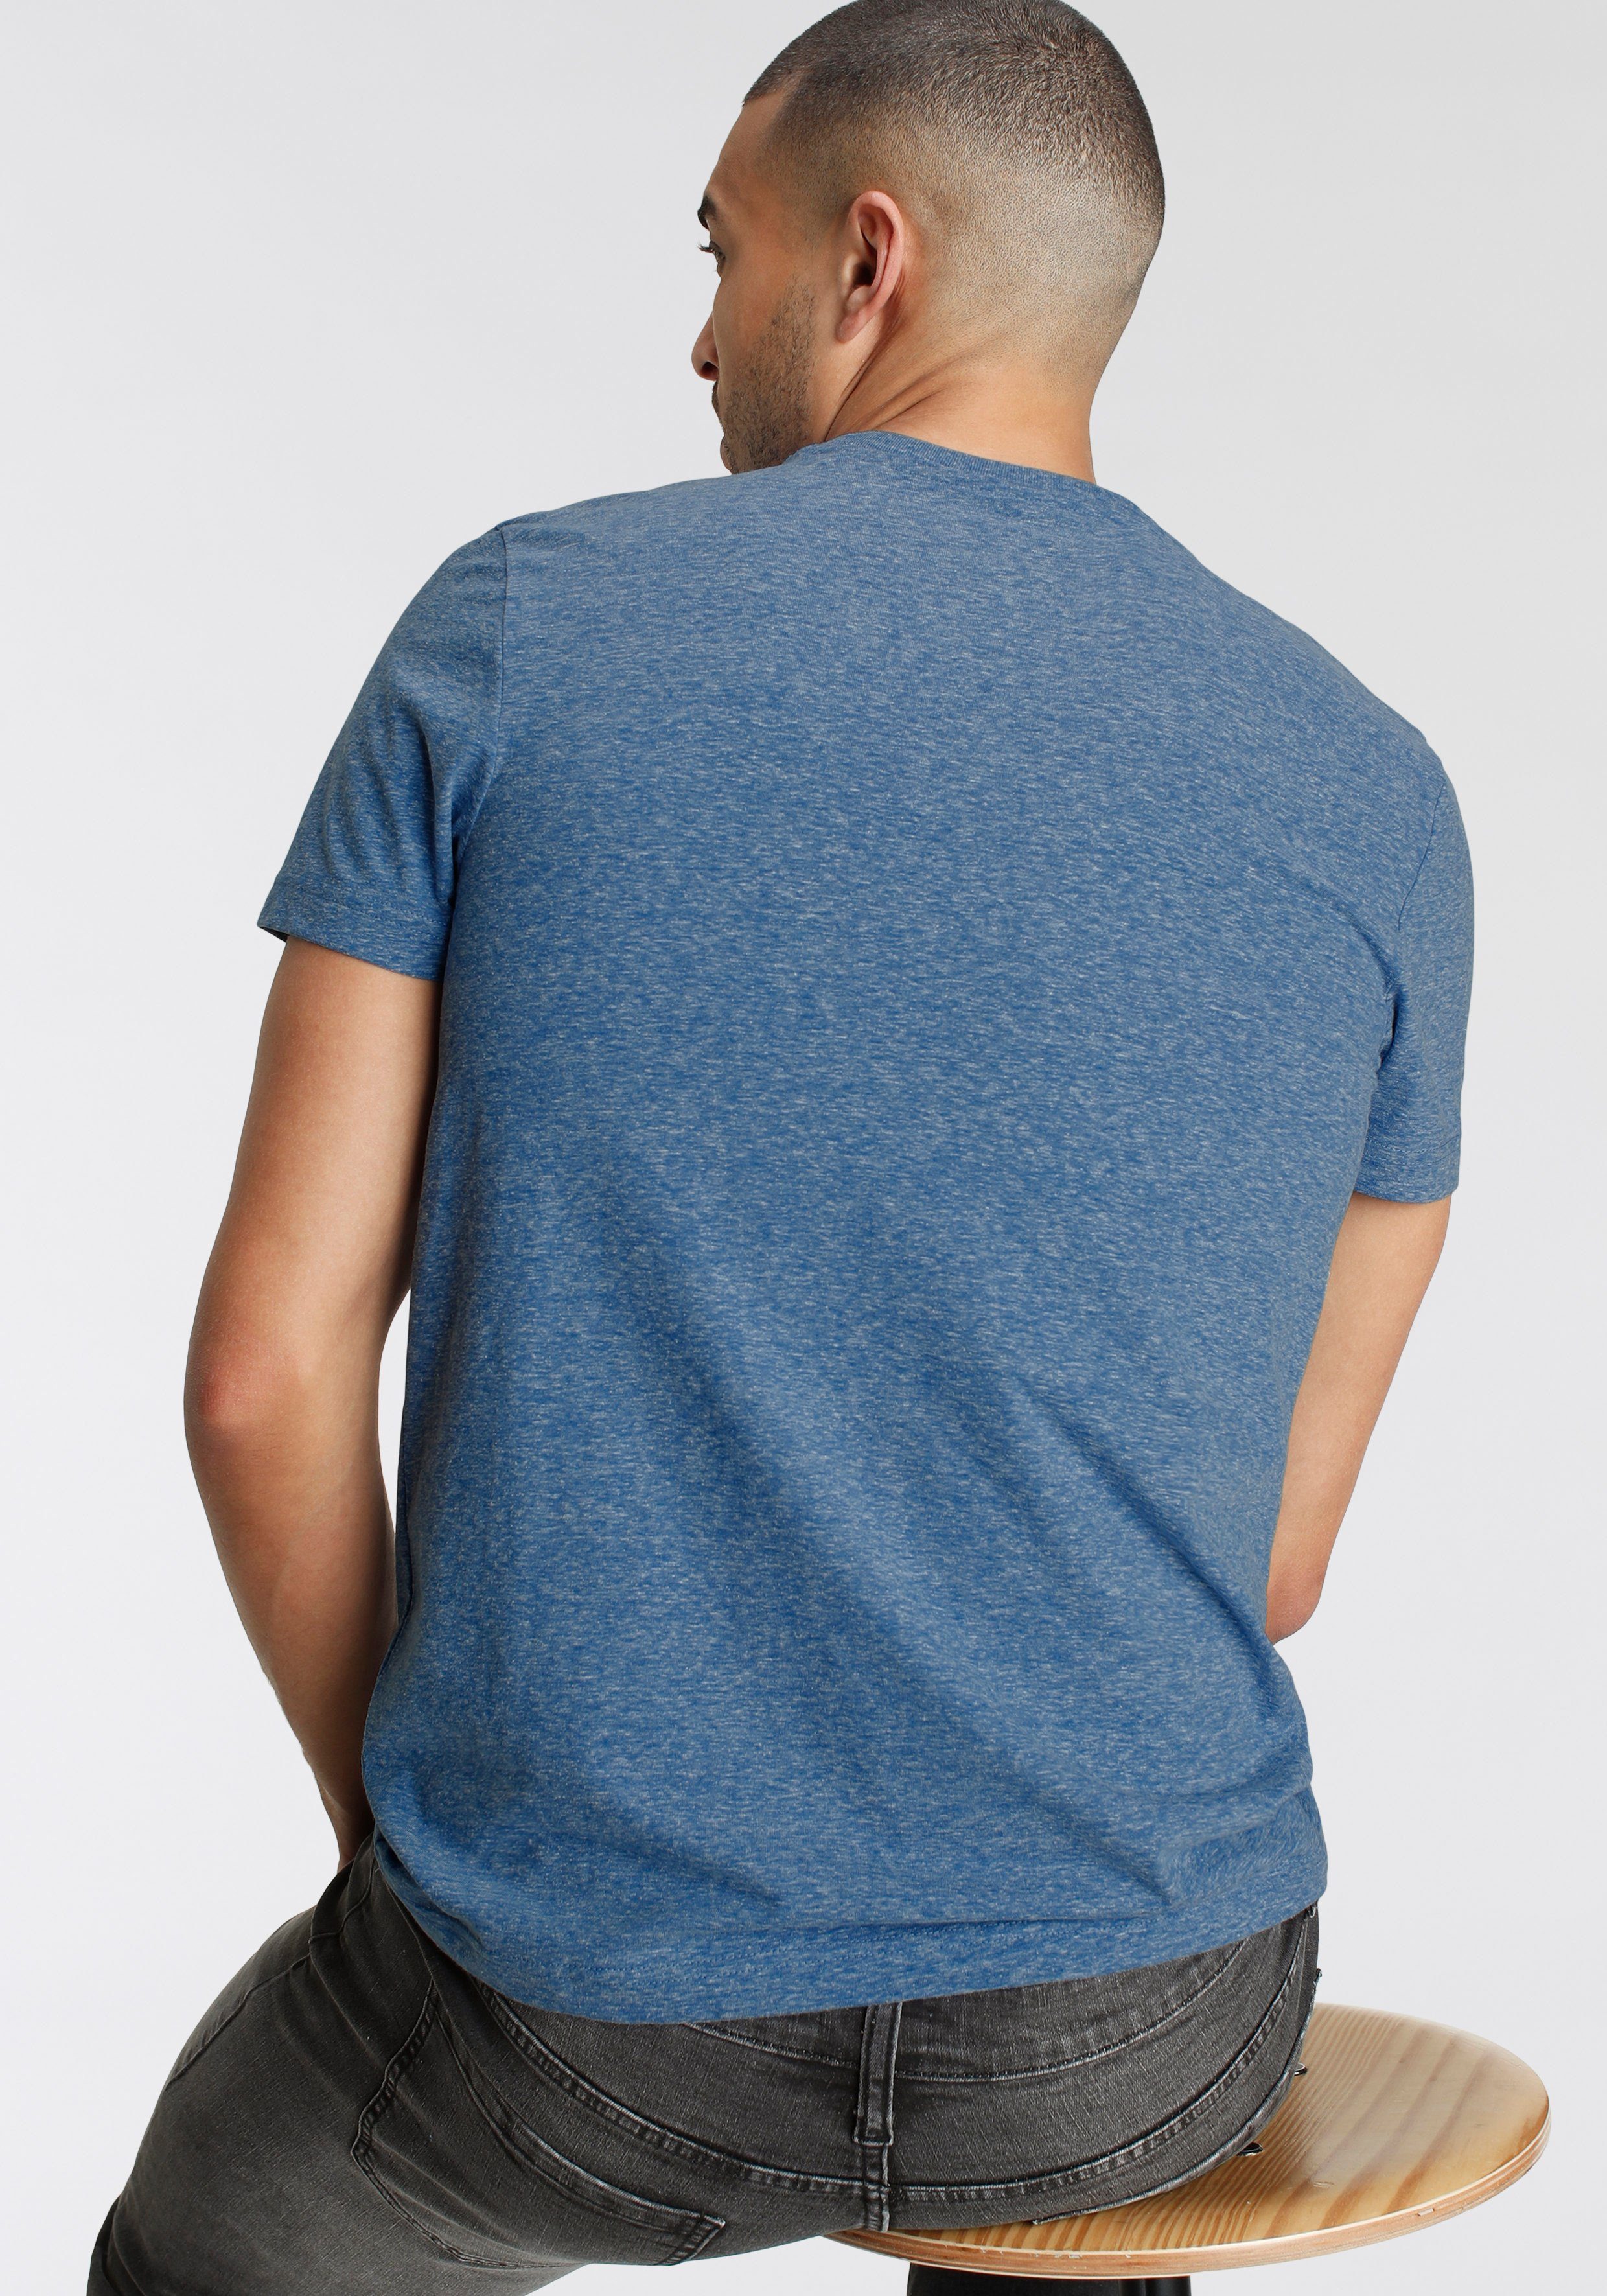 AJC T-Shirt in besonderer Melange Optik Print mit meliert Logo und blau